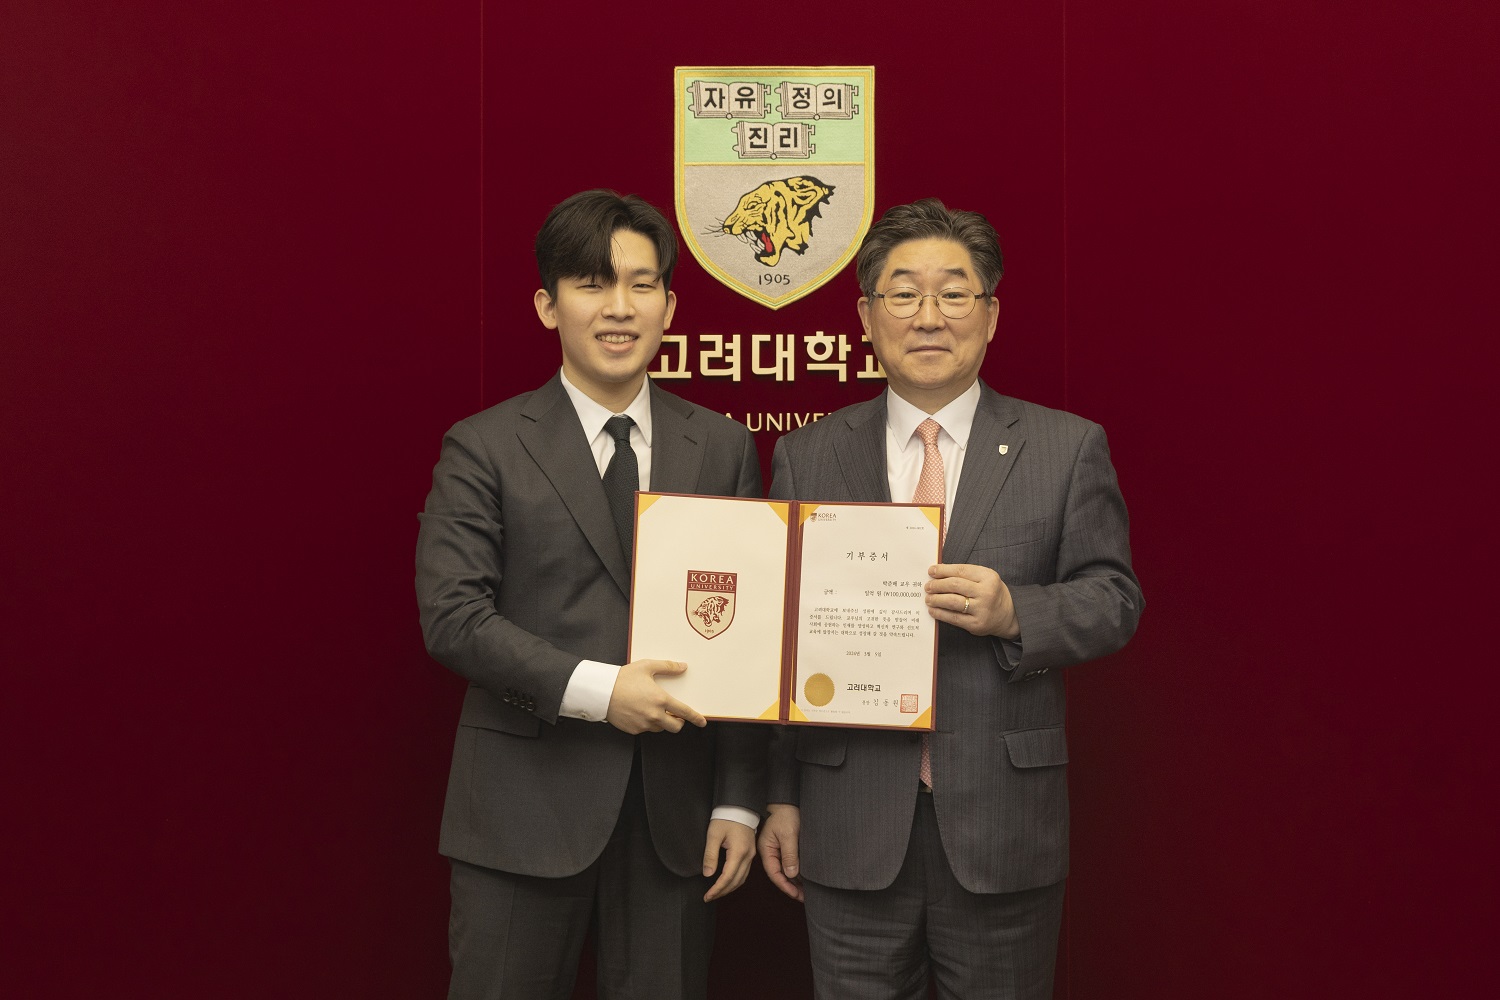 김동원 총장(오른쪽)과 박준배 학생이 기념 사진을 찍고 있다.